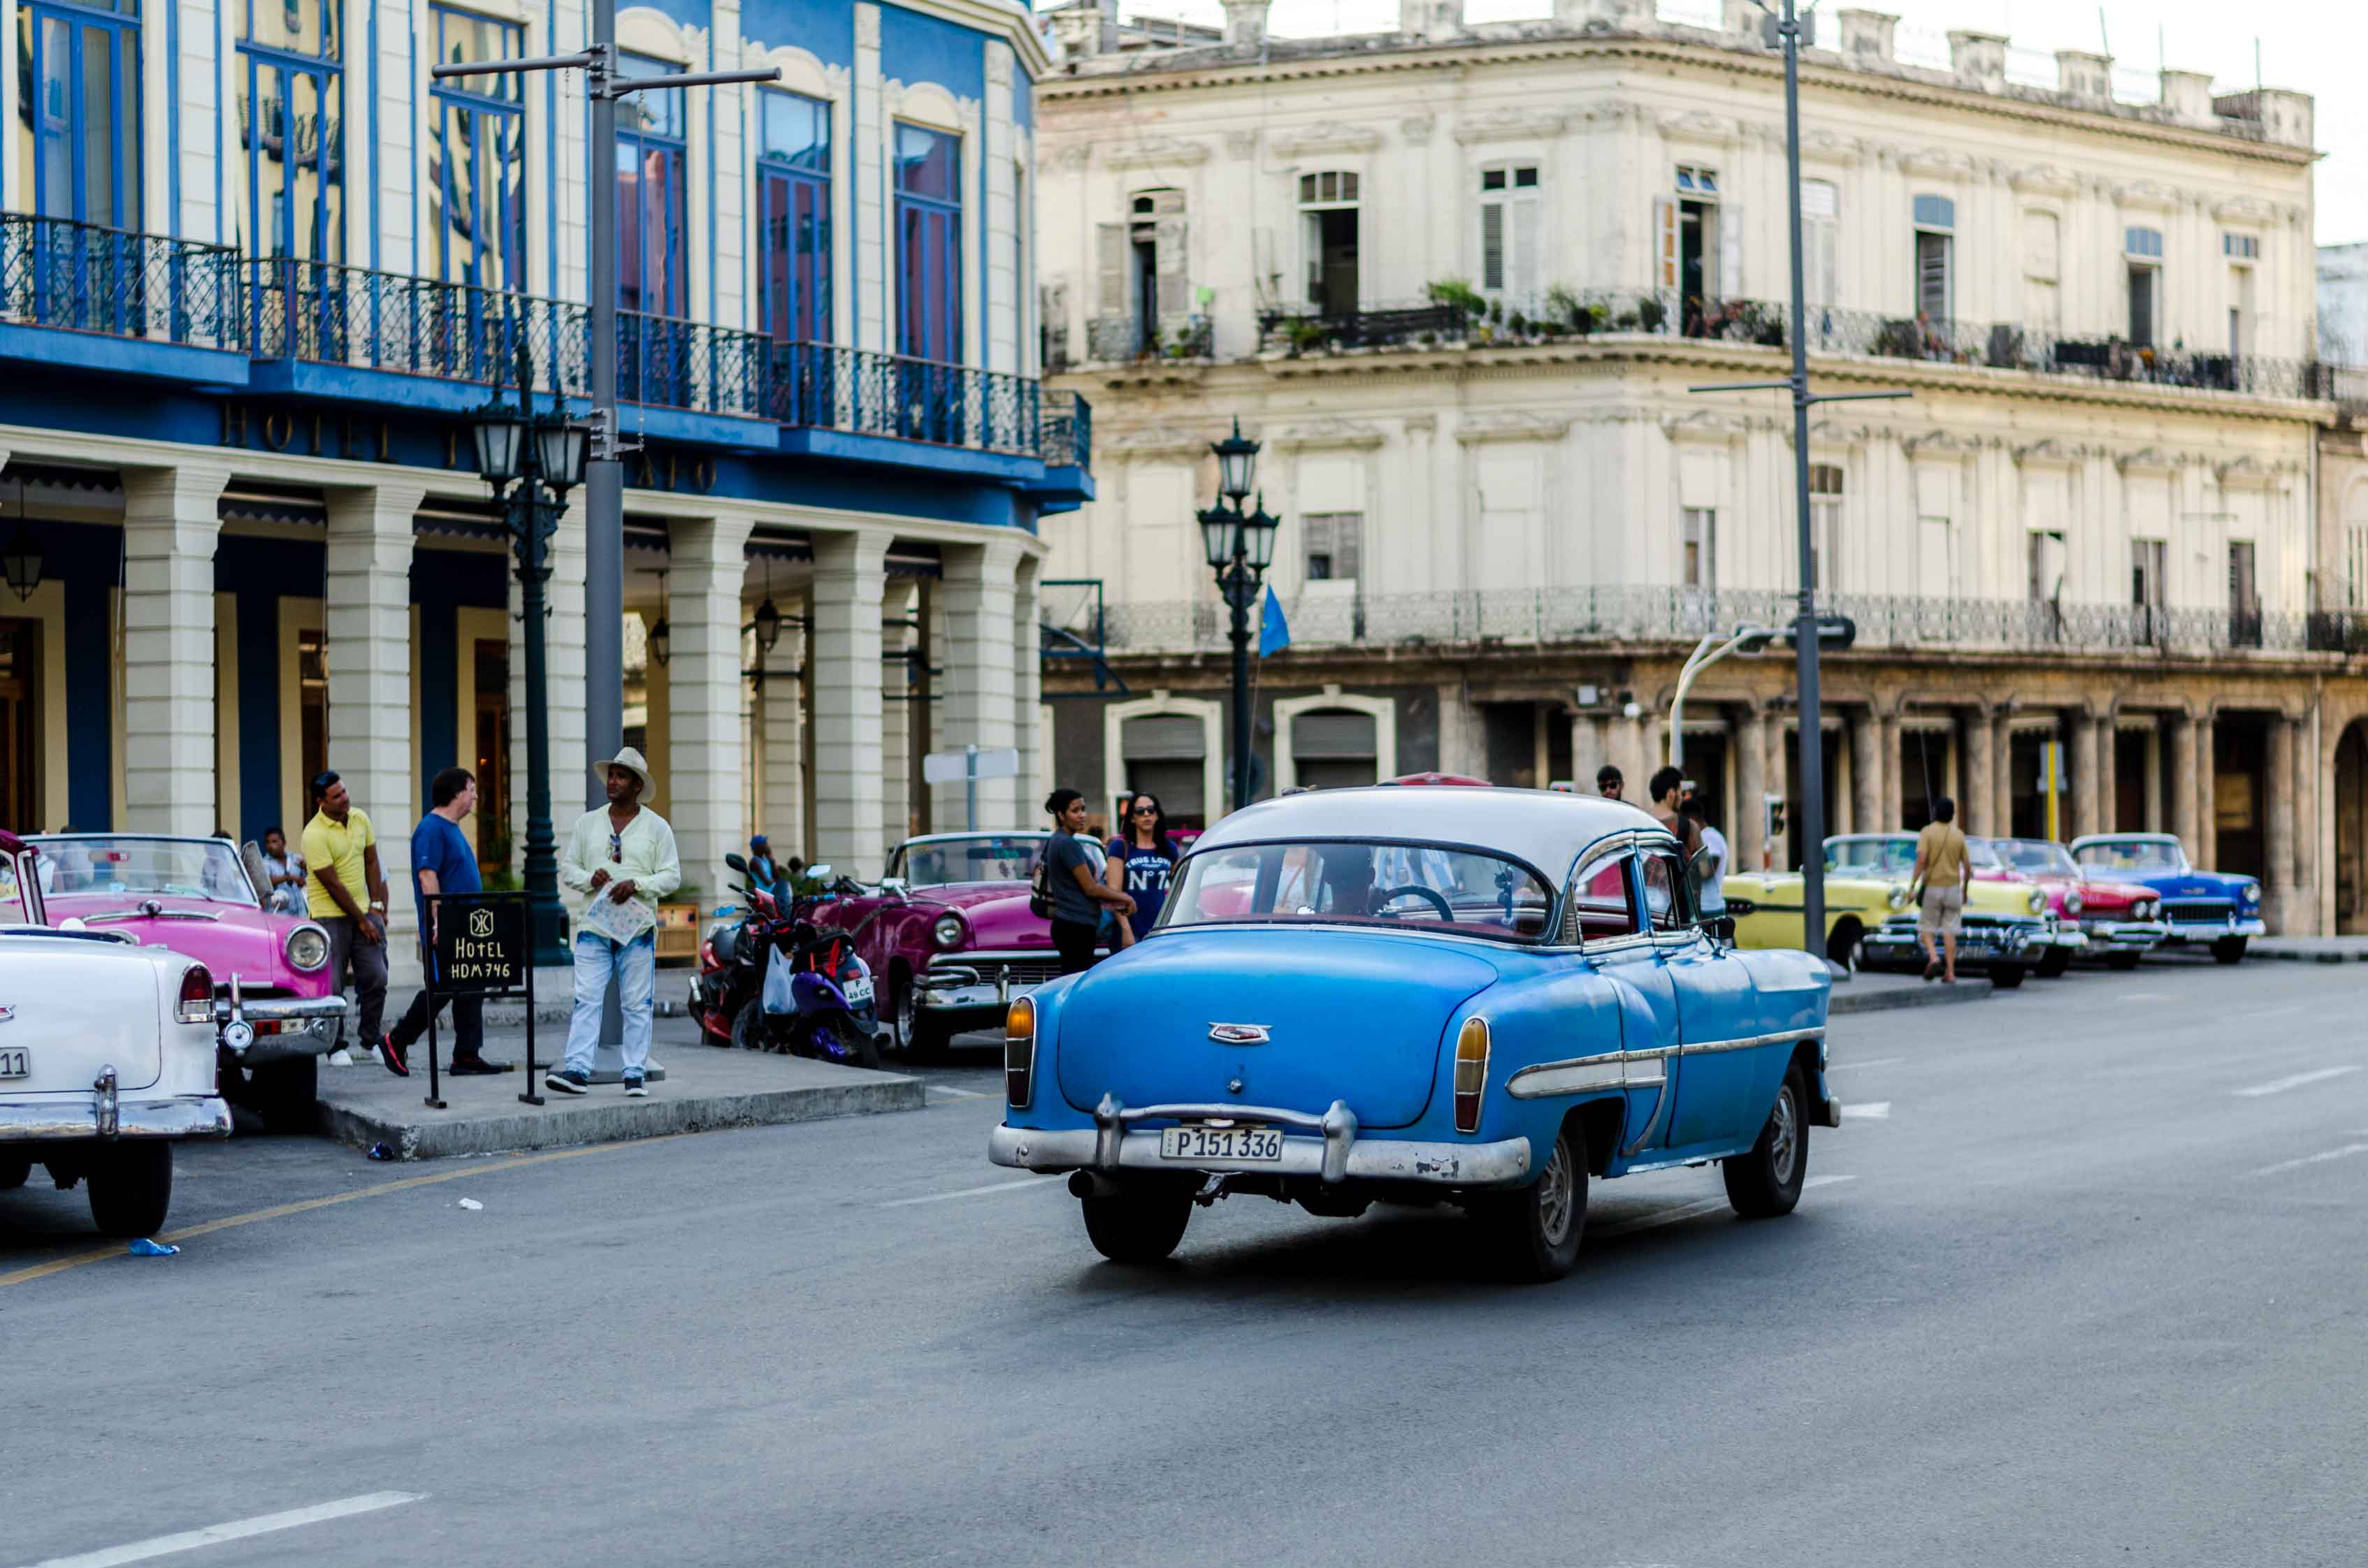 La Havane Cuba